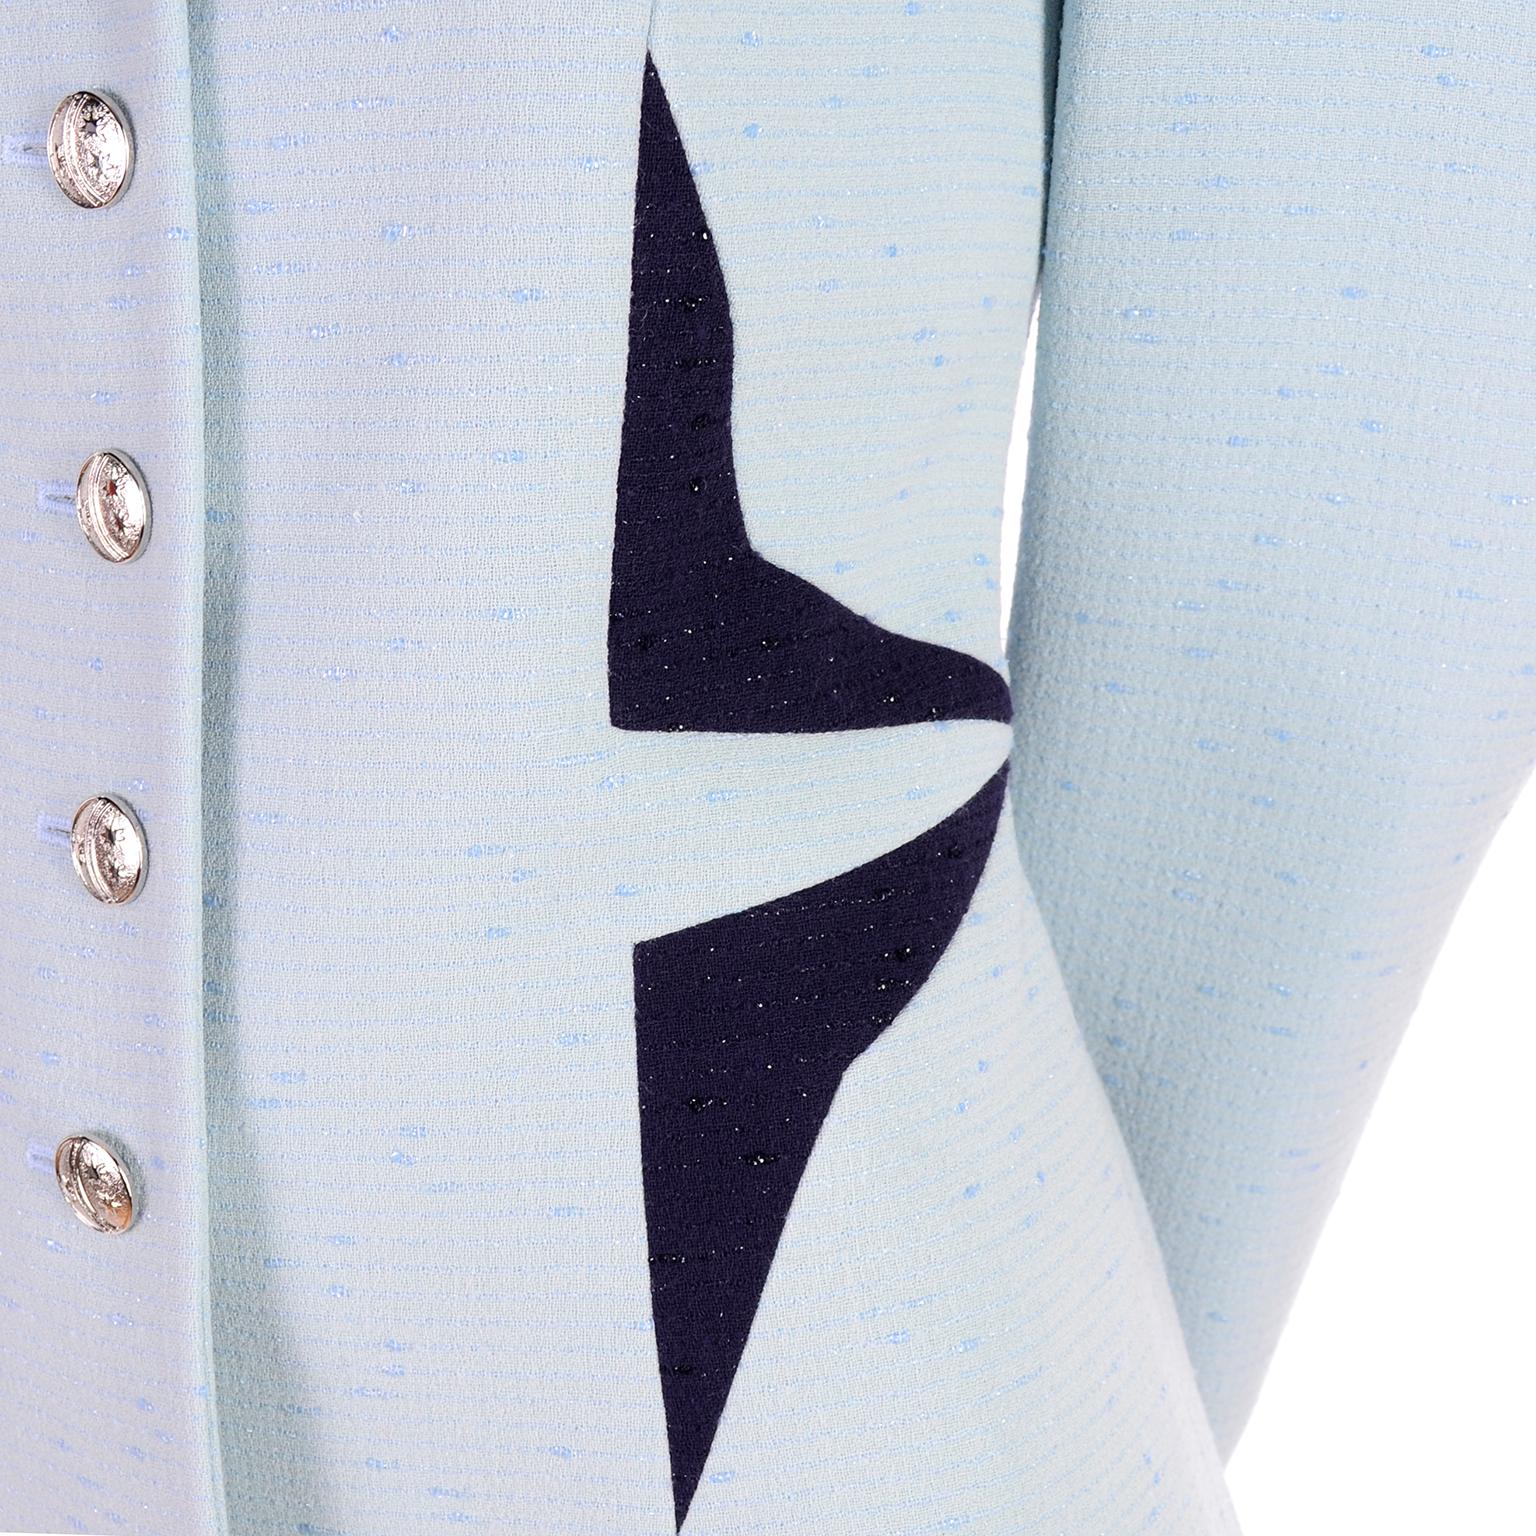 Il s'agit d'un rare blazer vintage Escada avec des motifs géométriques qui rappellent le style de Thierry Mugler ! Cette veste bleu pâle présente de spectaculaires triangles bleu foncé à la taille et sous le col. La veste est en tissu bleu en laine